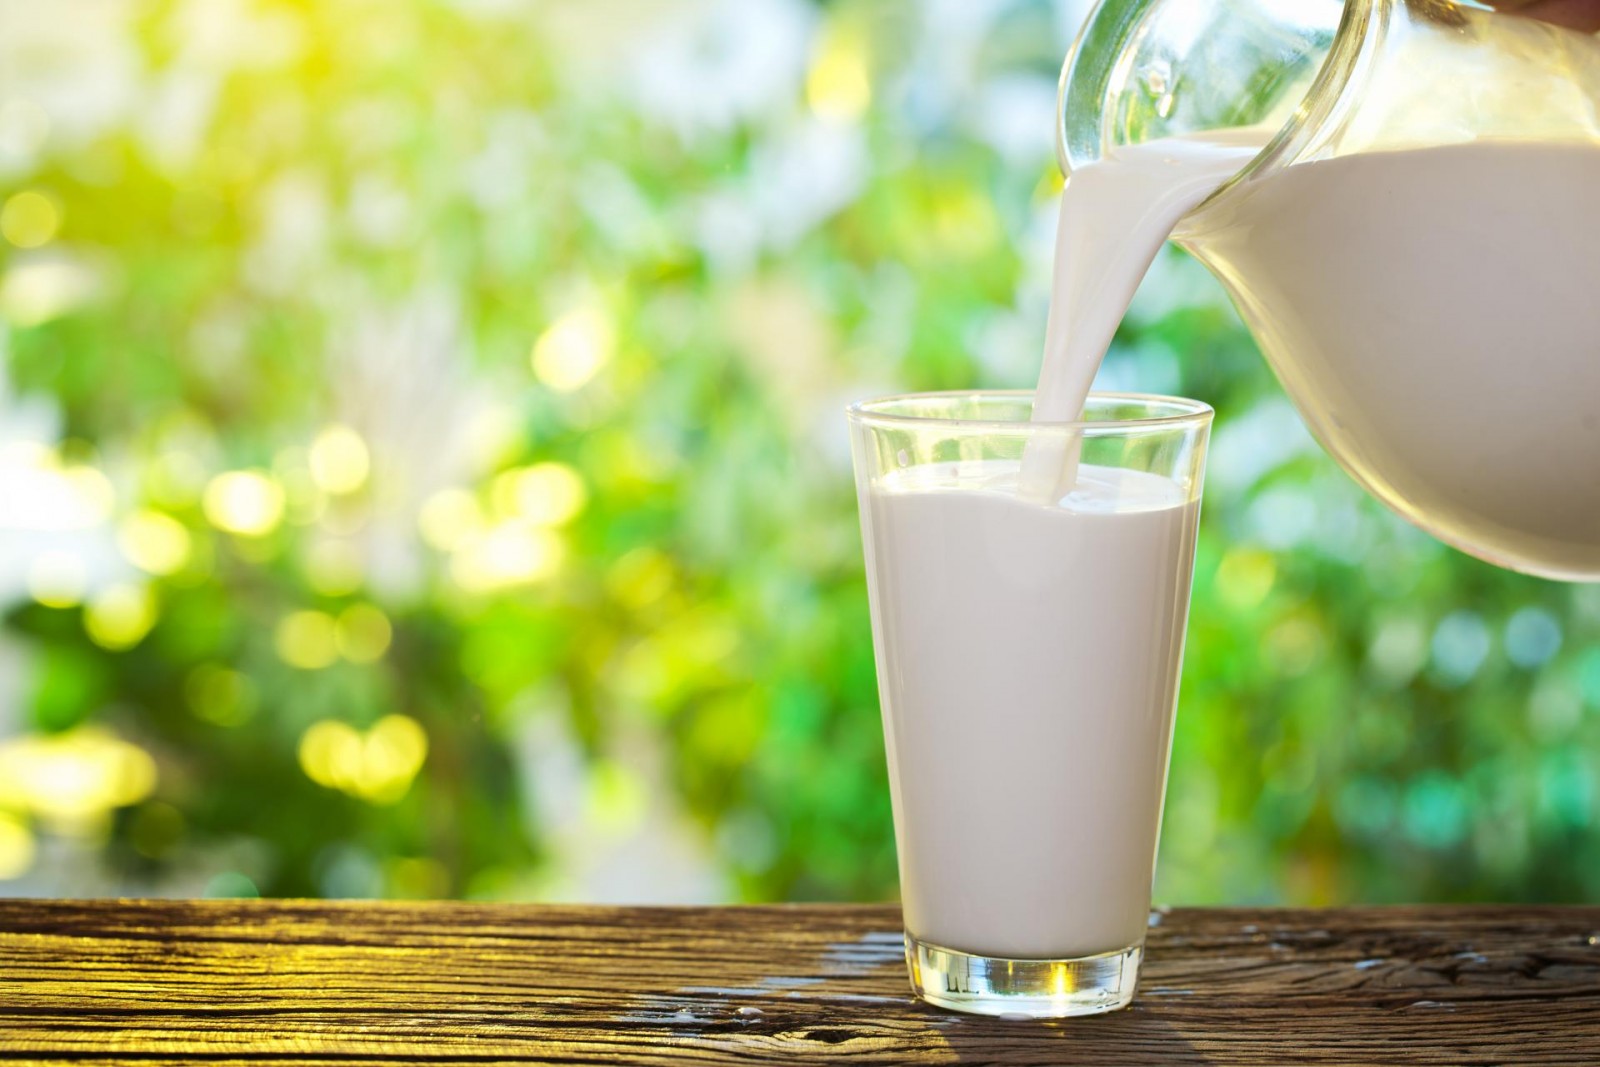 Лаборатория Россельхознадзора выявила нарушения в партии молока общим весом 2,5 тонны